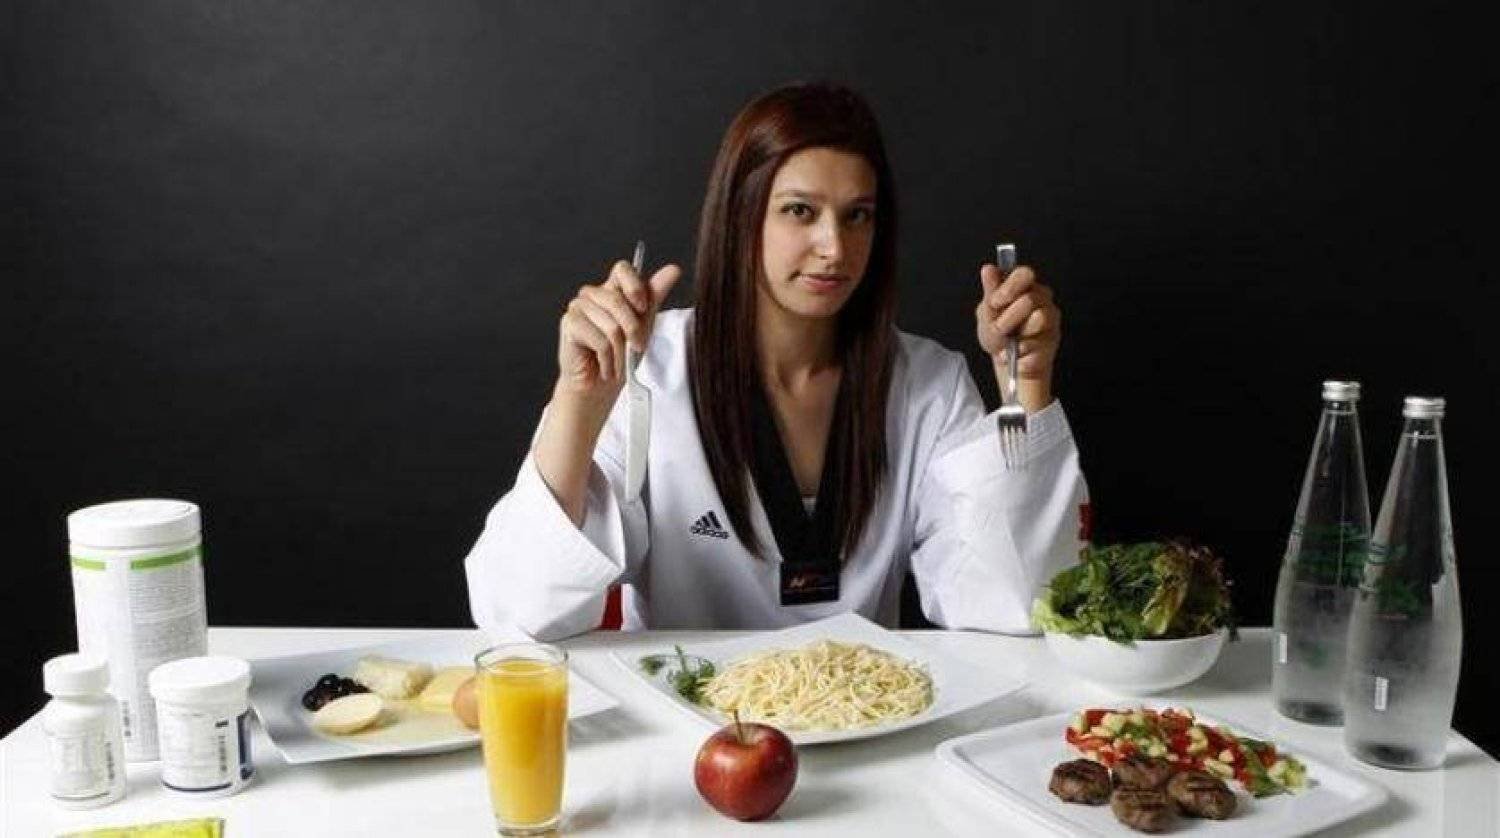 إضافة ملعقة من زيت الزيتون إلى نظامك الغذائي قد يفيد عقلك (رويترز)